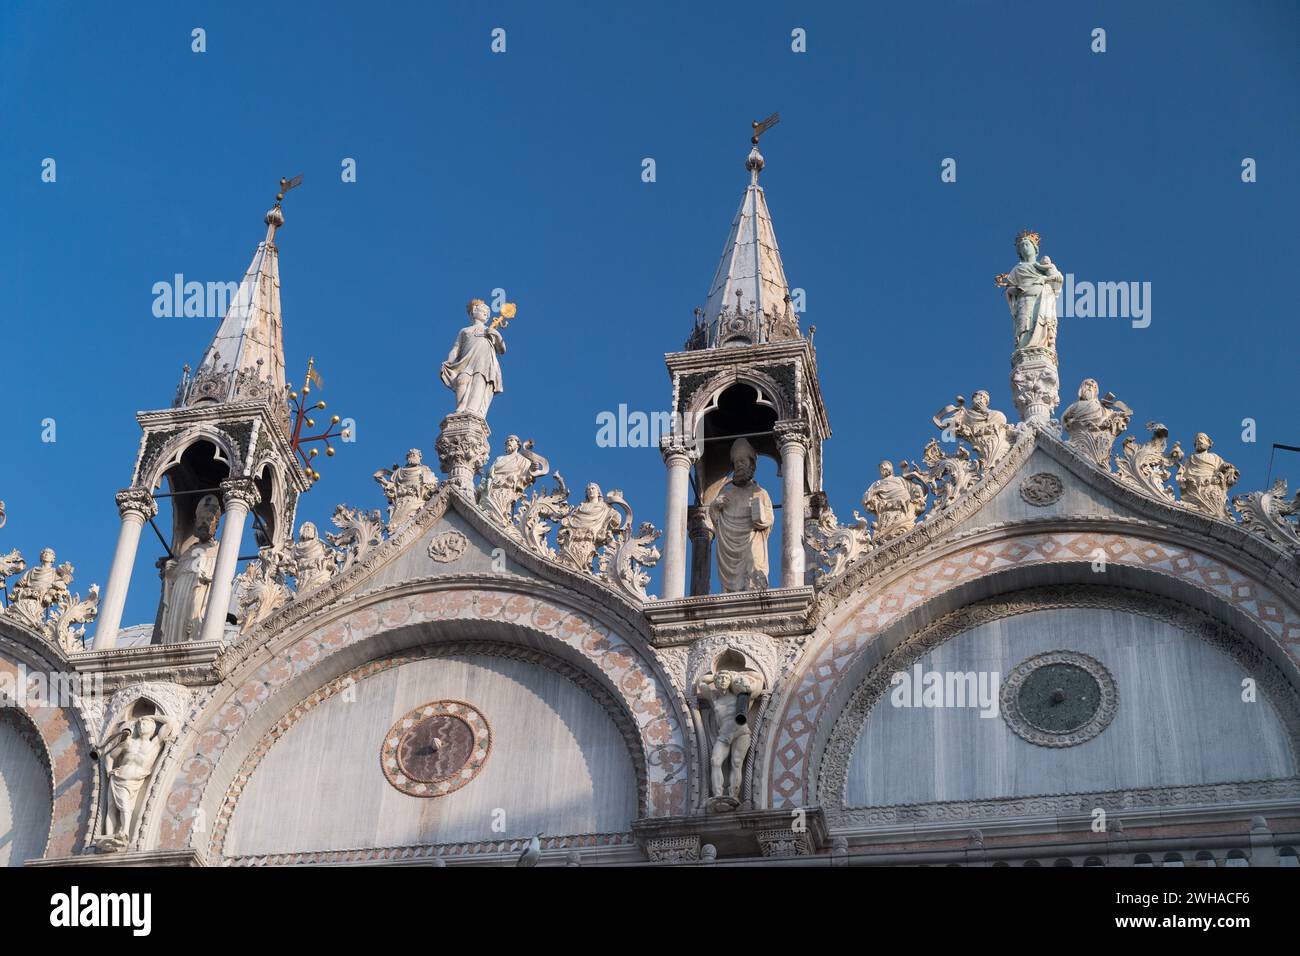 Basilica bizantina, romanica e gotica Cattedrale Patriarcale di San Marco costruita nel IX e XI secolo Foto Stock